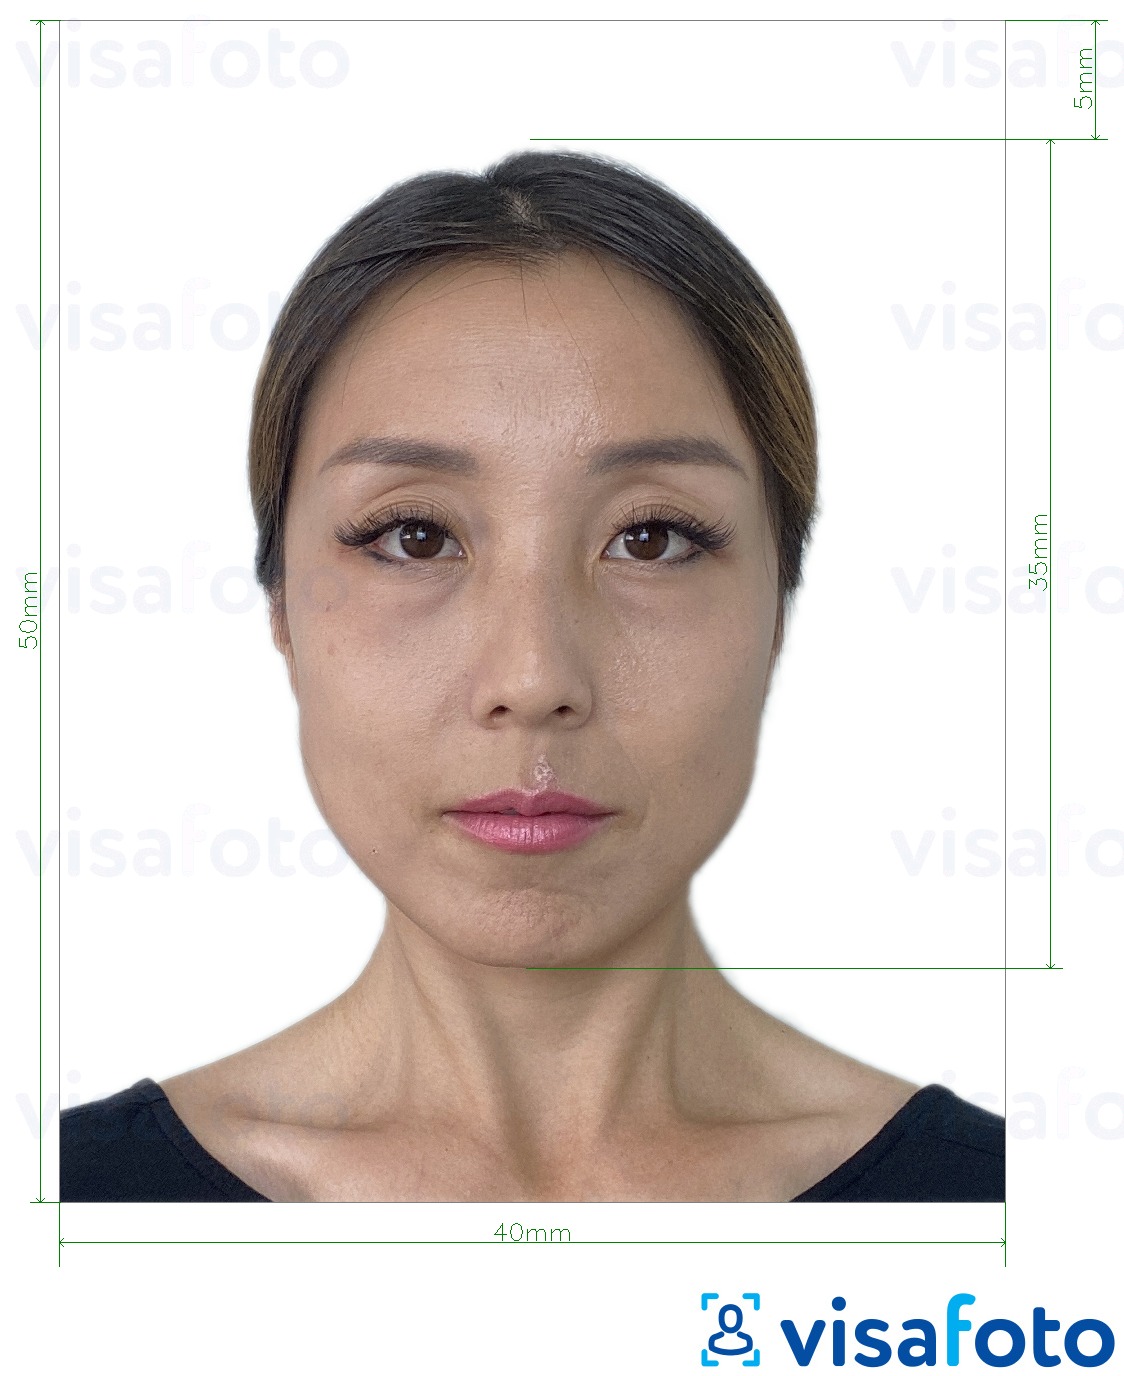 Exemple de foto per a Visa de Hong Kong 40x50 mm (4x5 cm) amb la mida exacta especificada